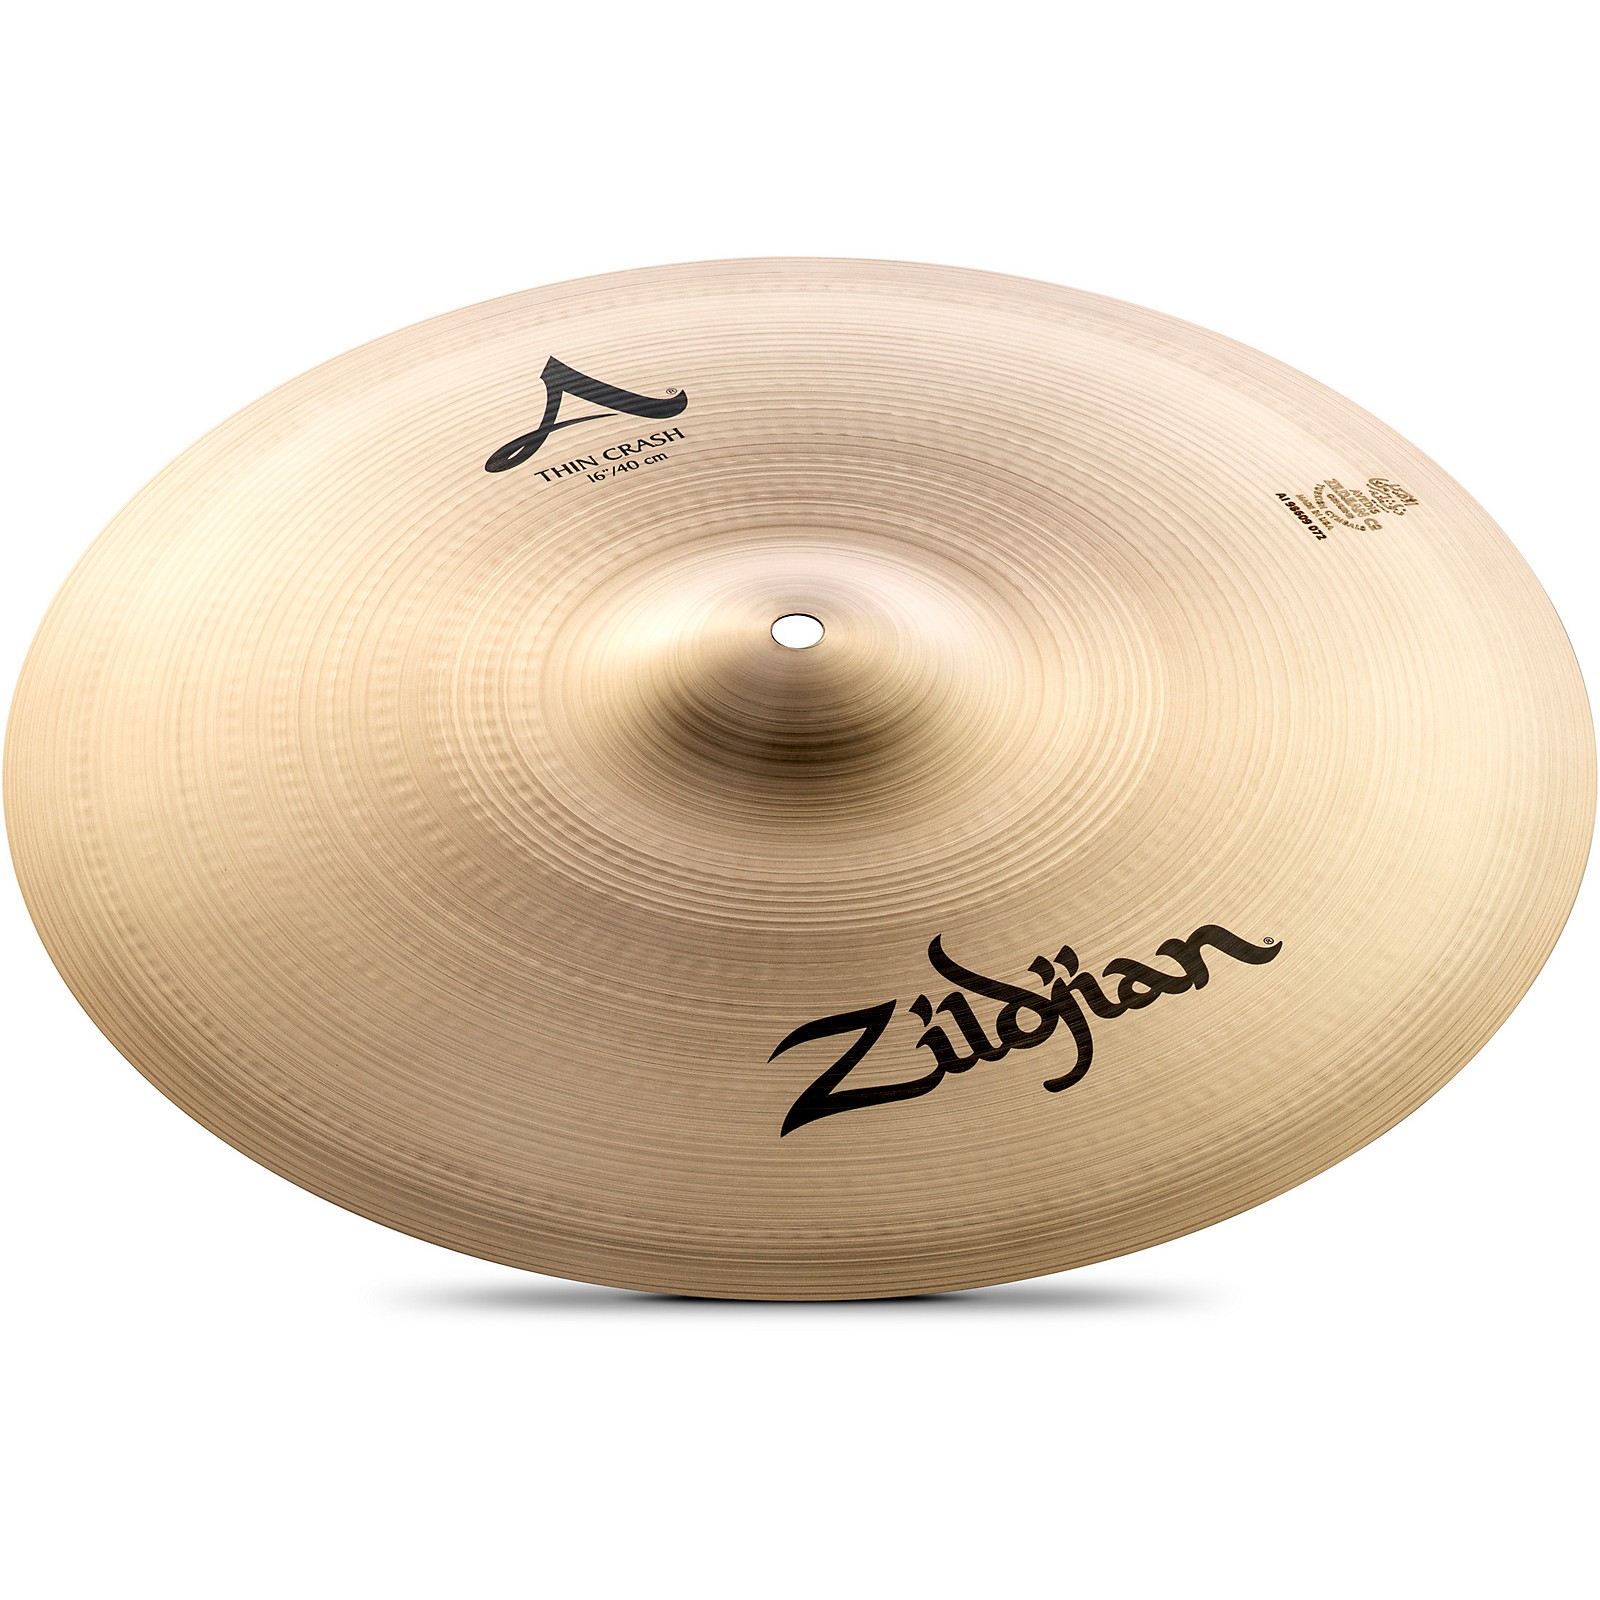 Zildjian A Series Thin Crash Cymbal 16 in. | Guitar Center